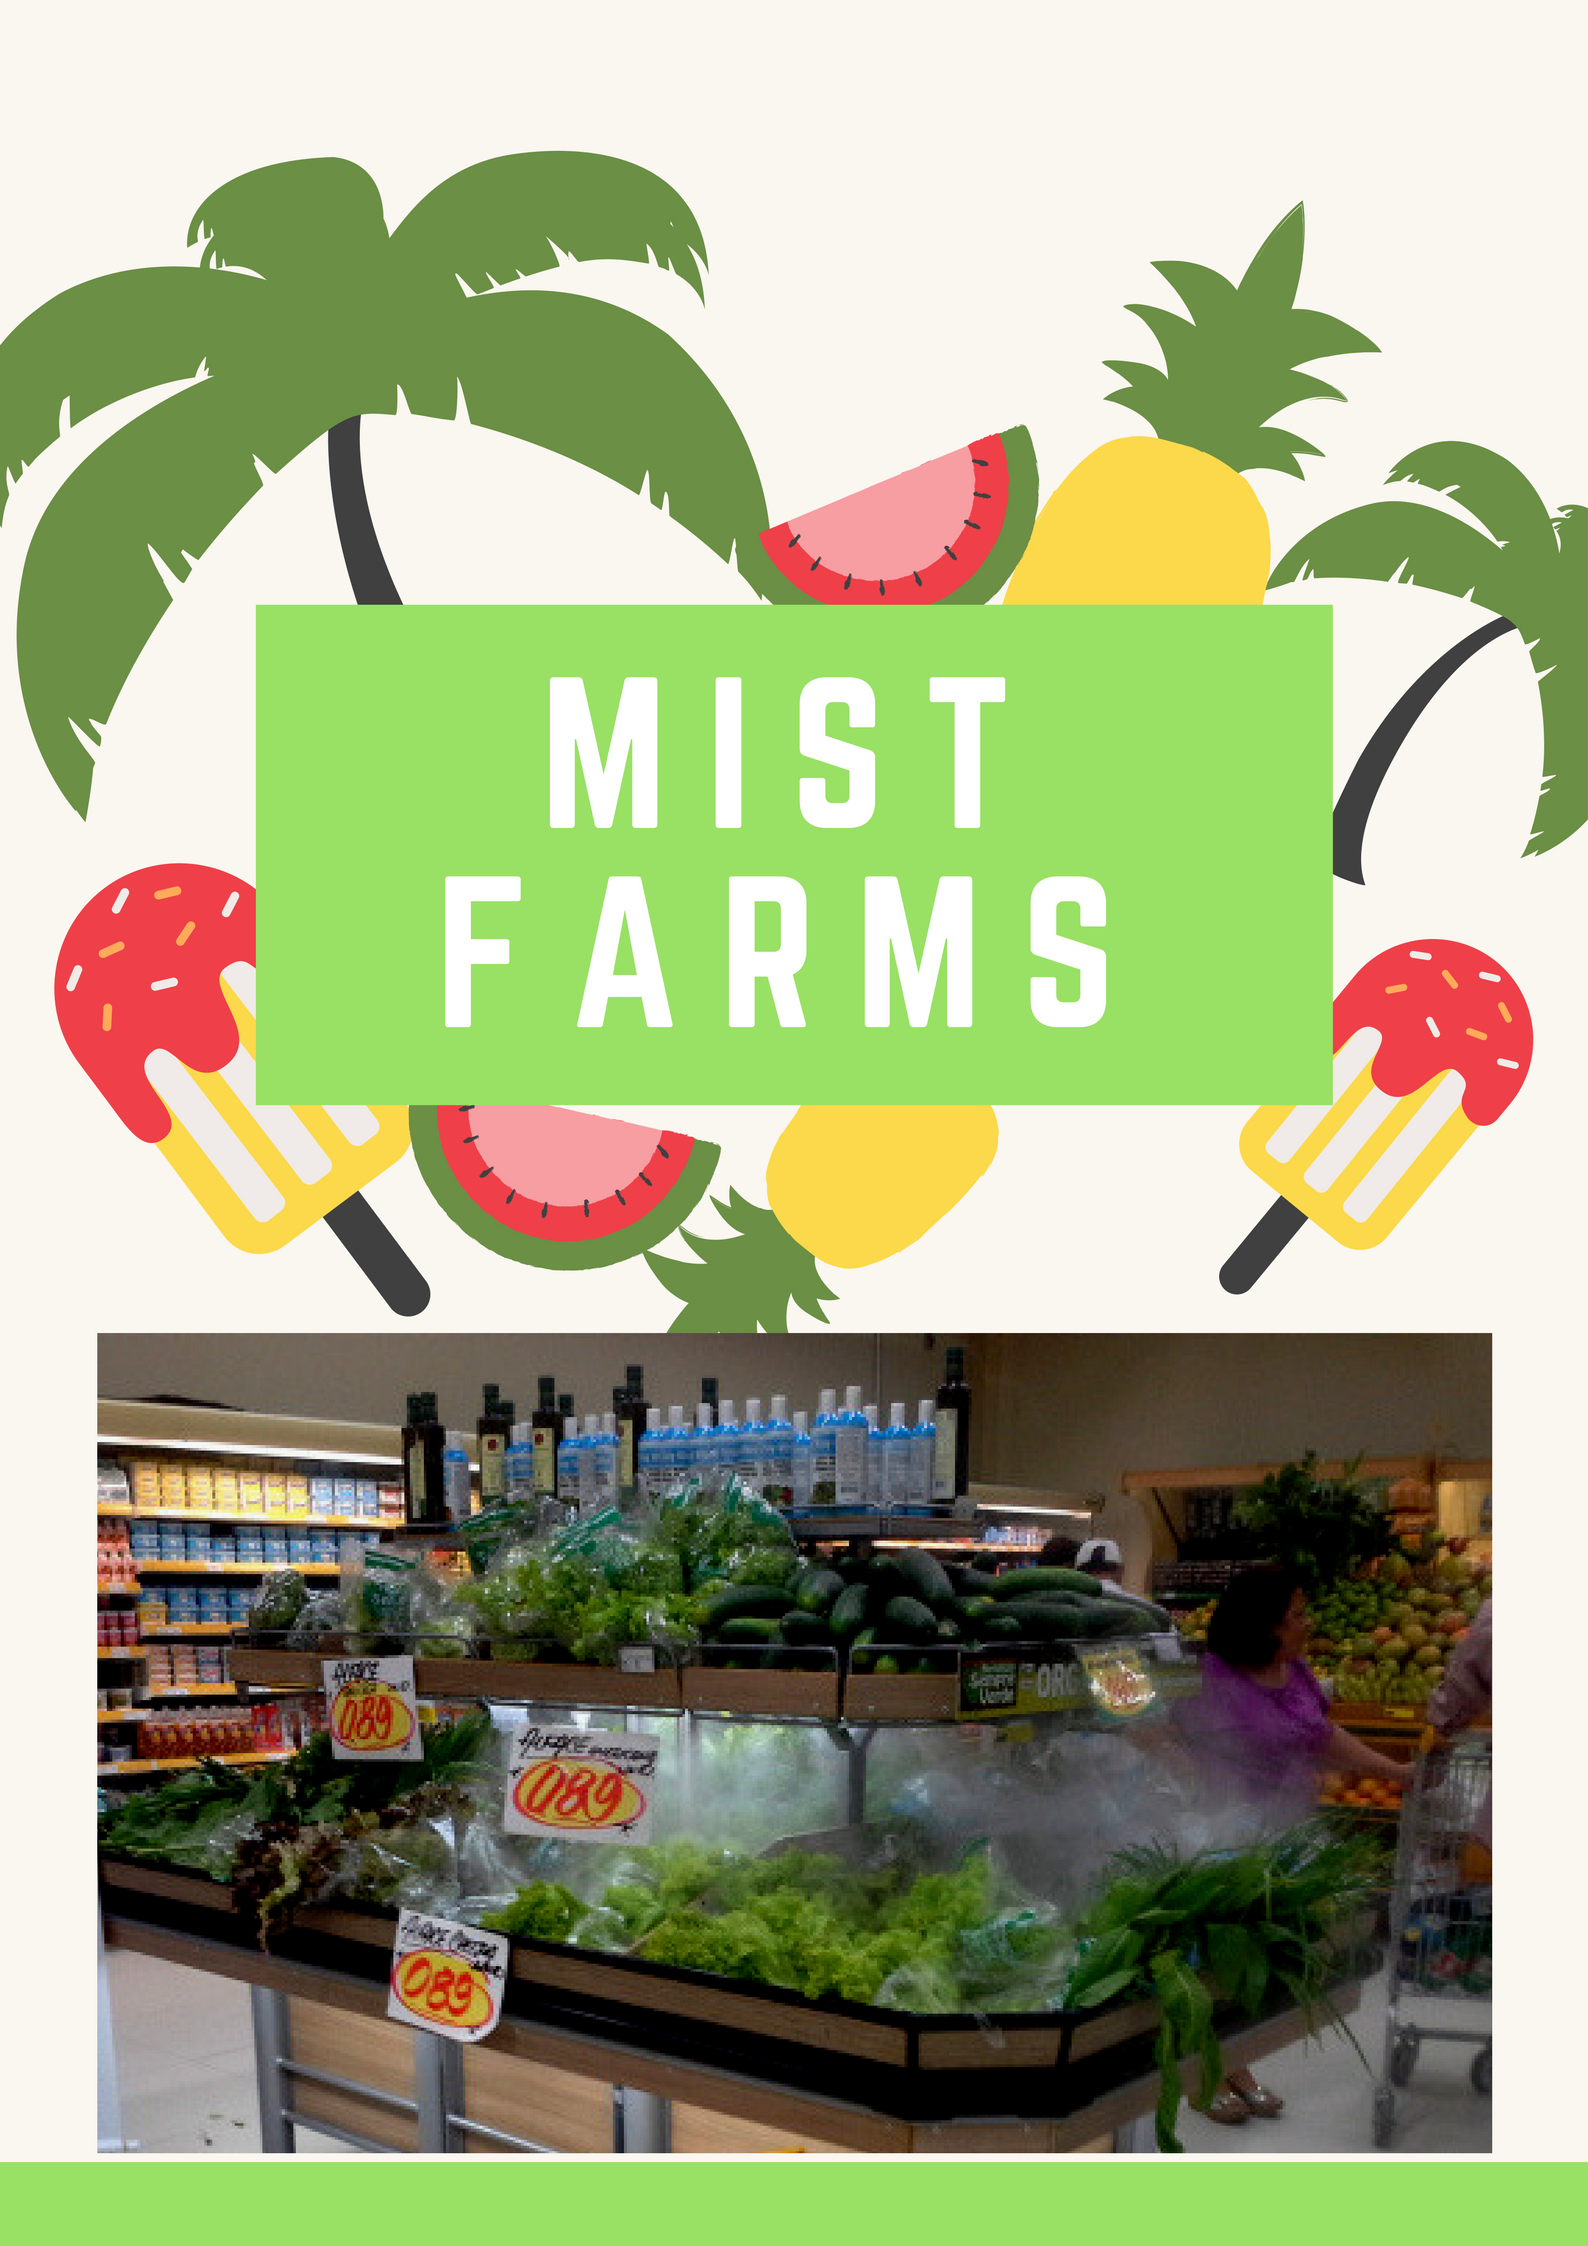 Mist farms